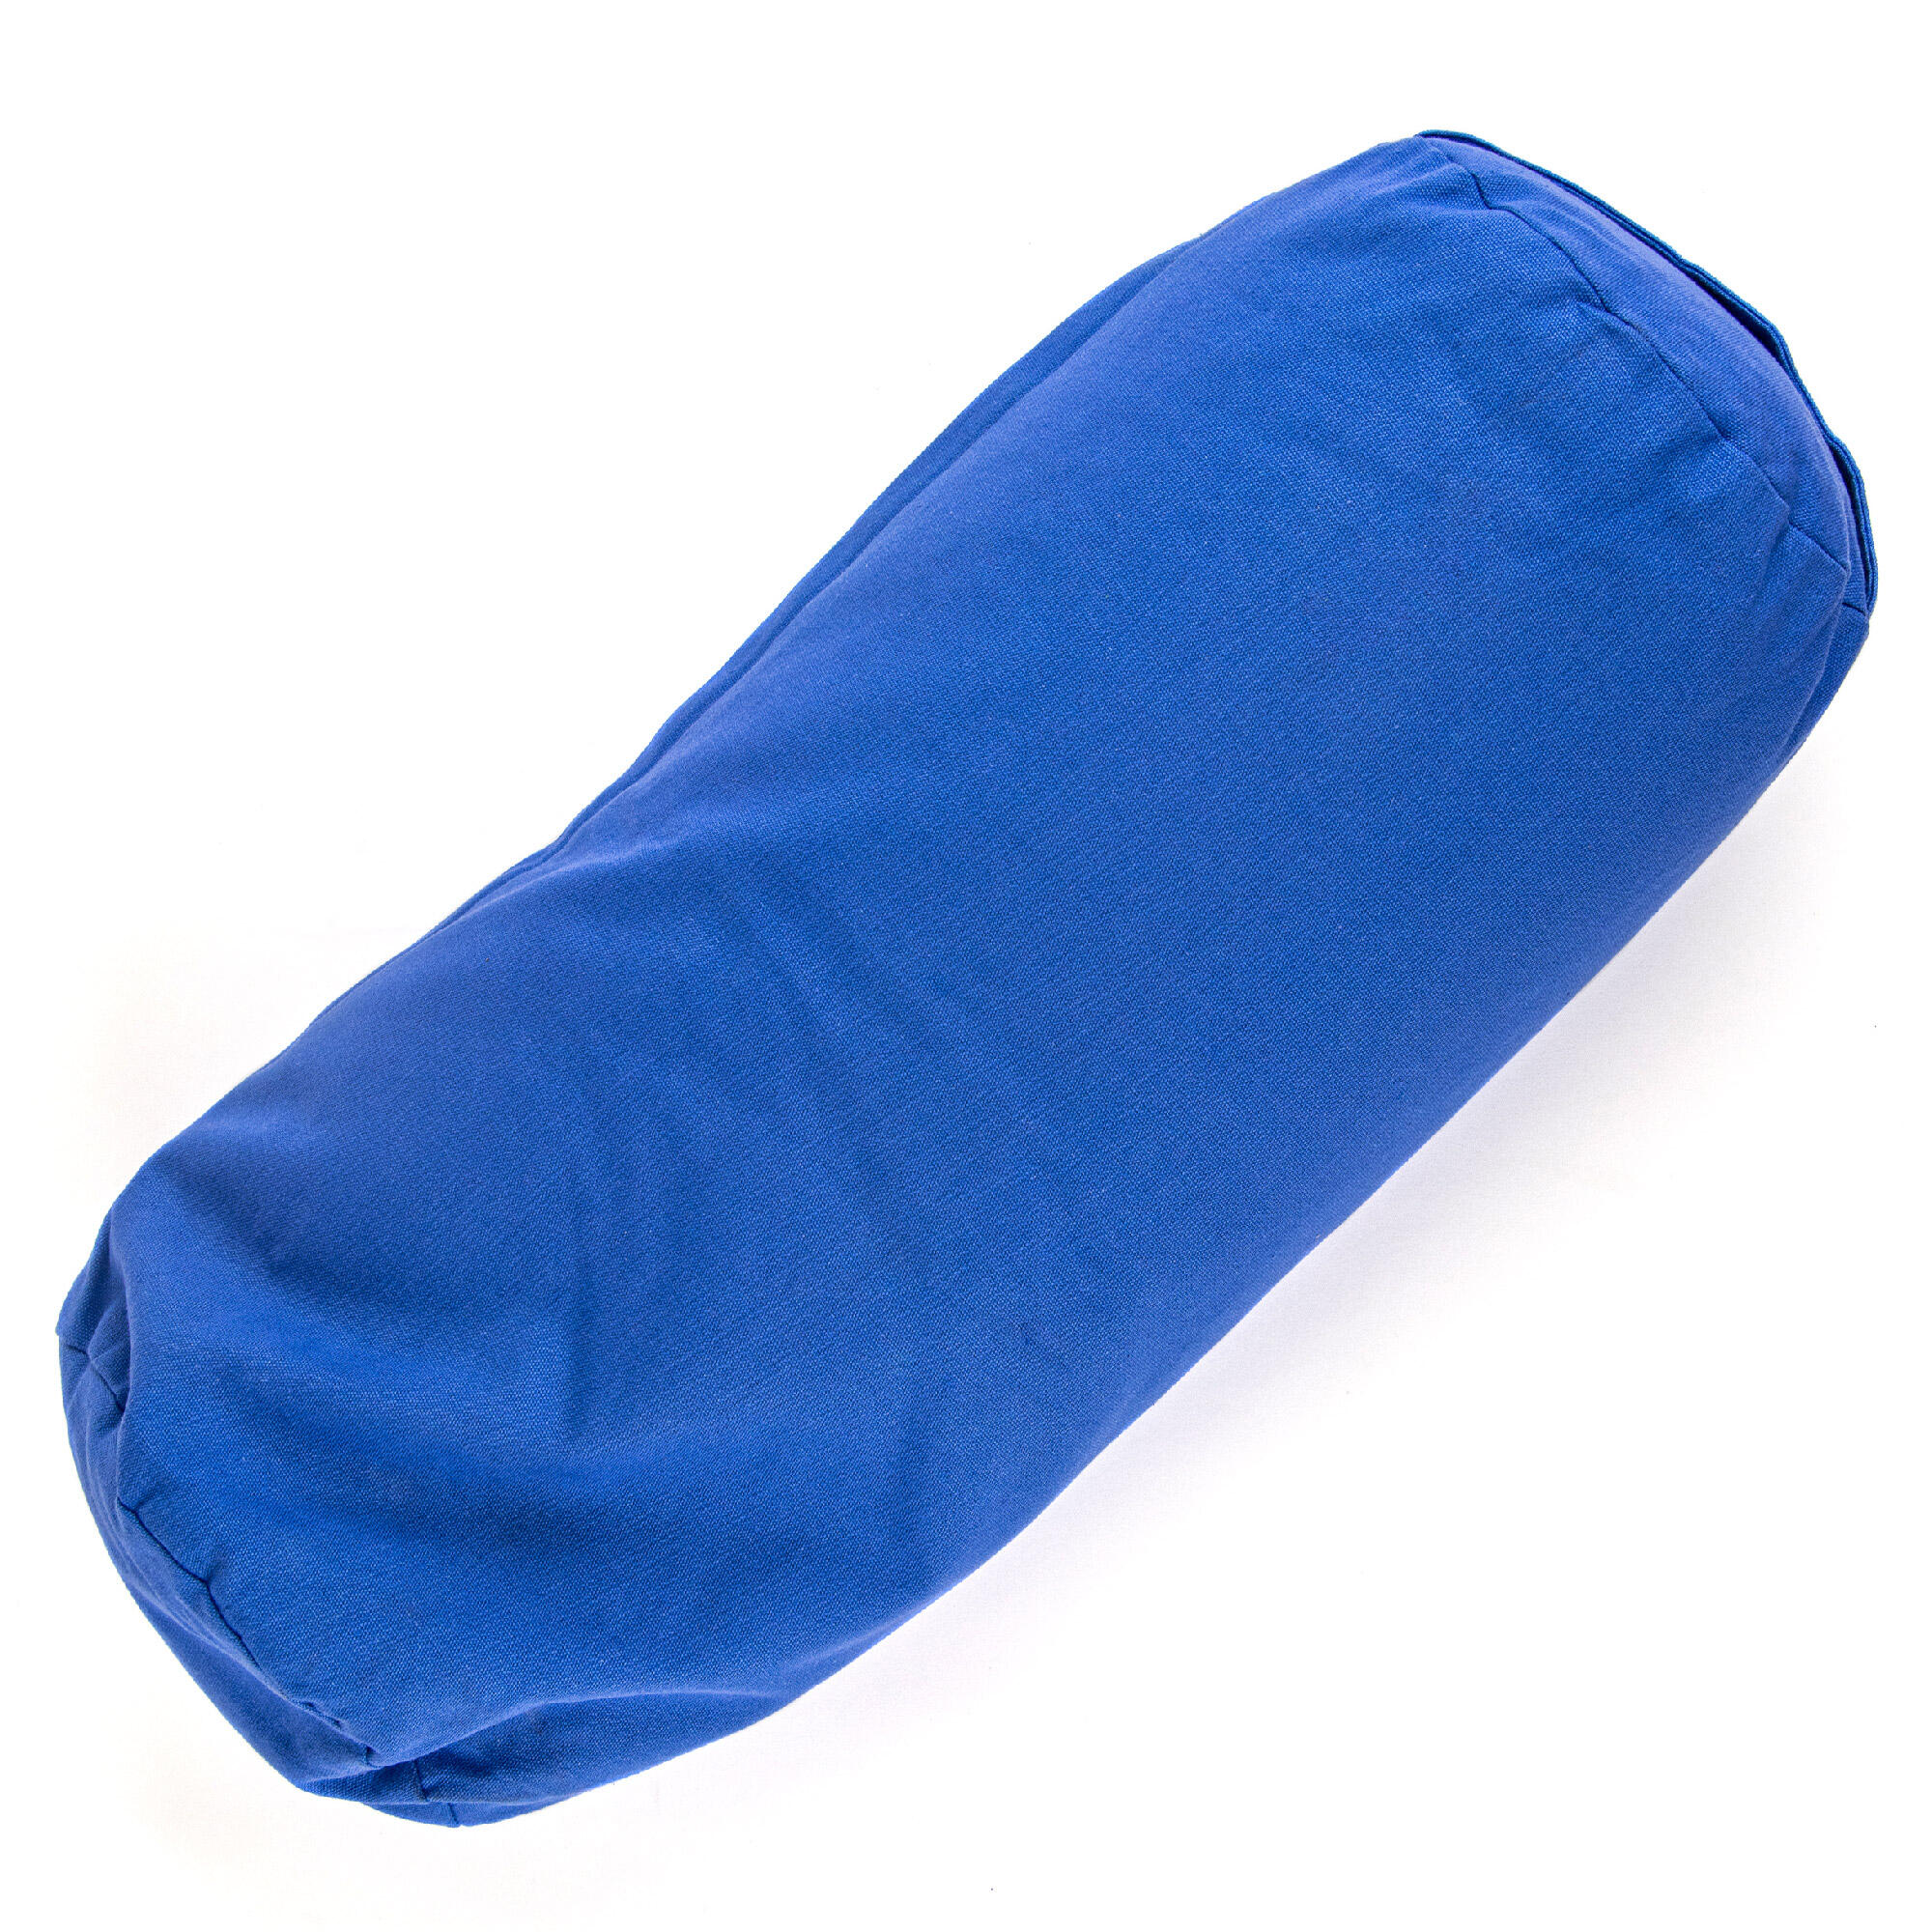 MYGA Support Bolster Pillow - Blue